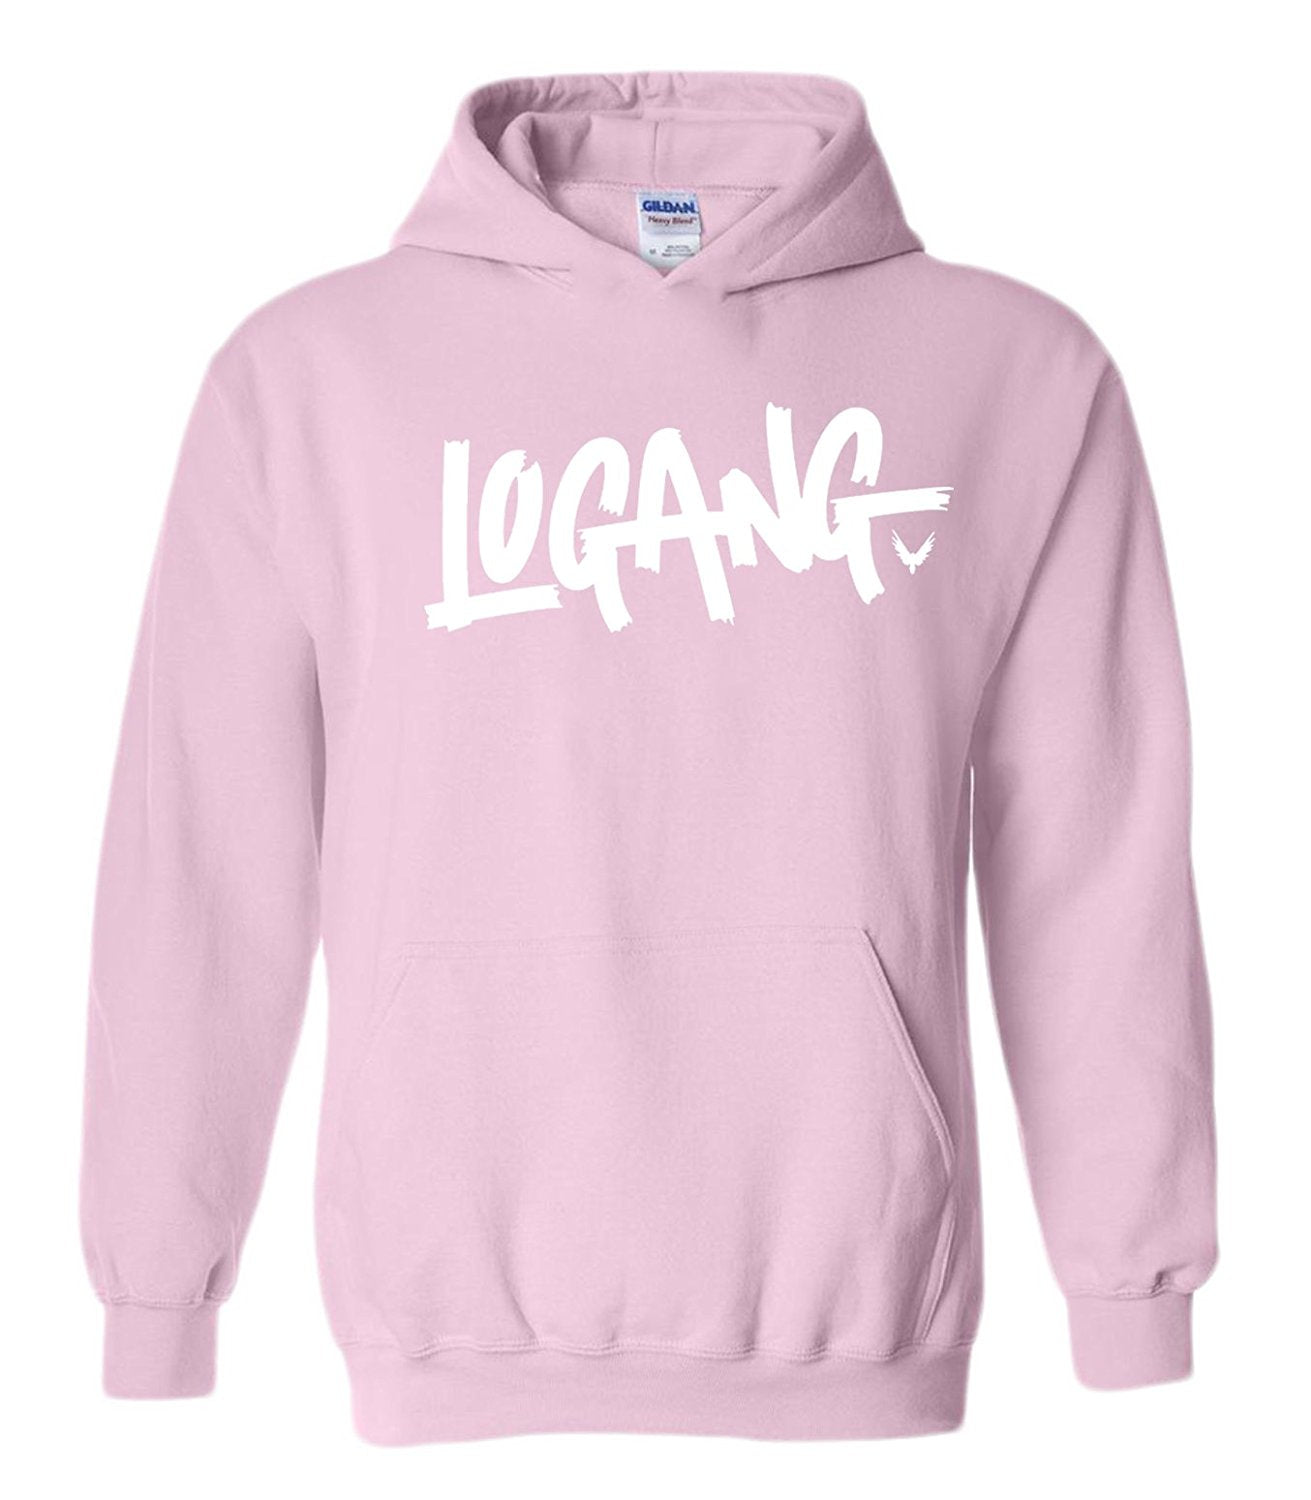 logan paul pink hoodie